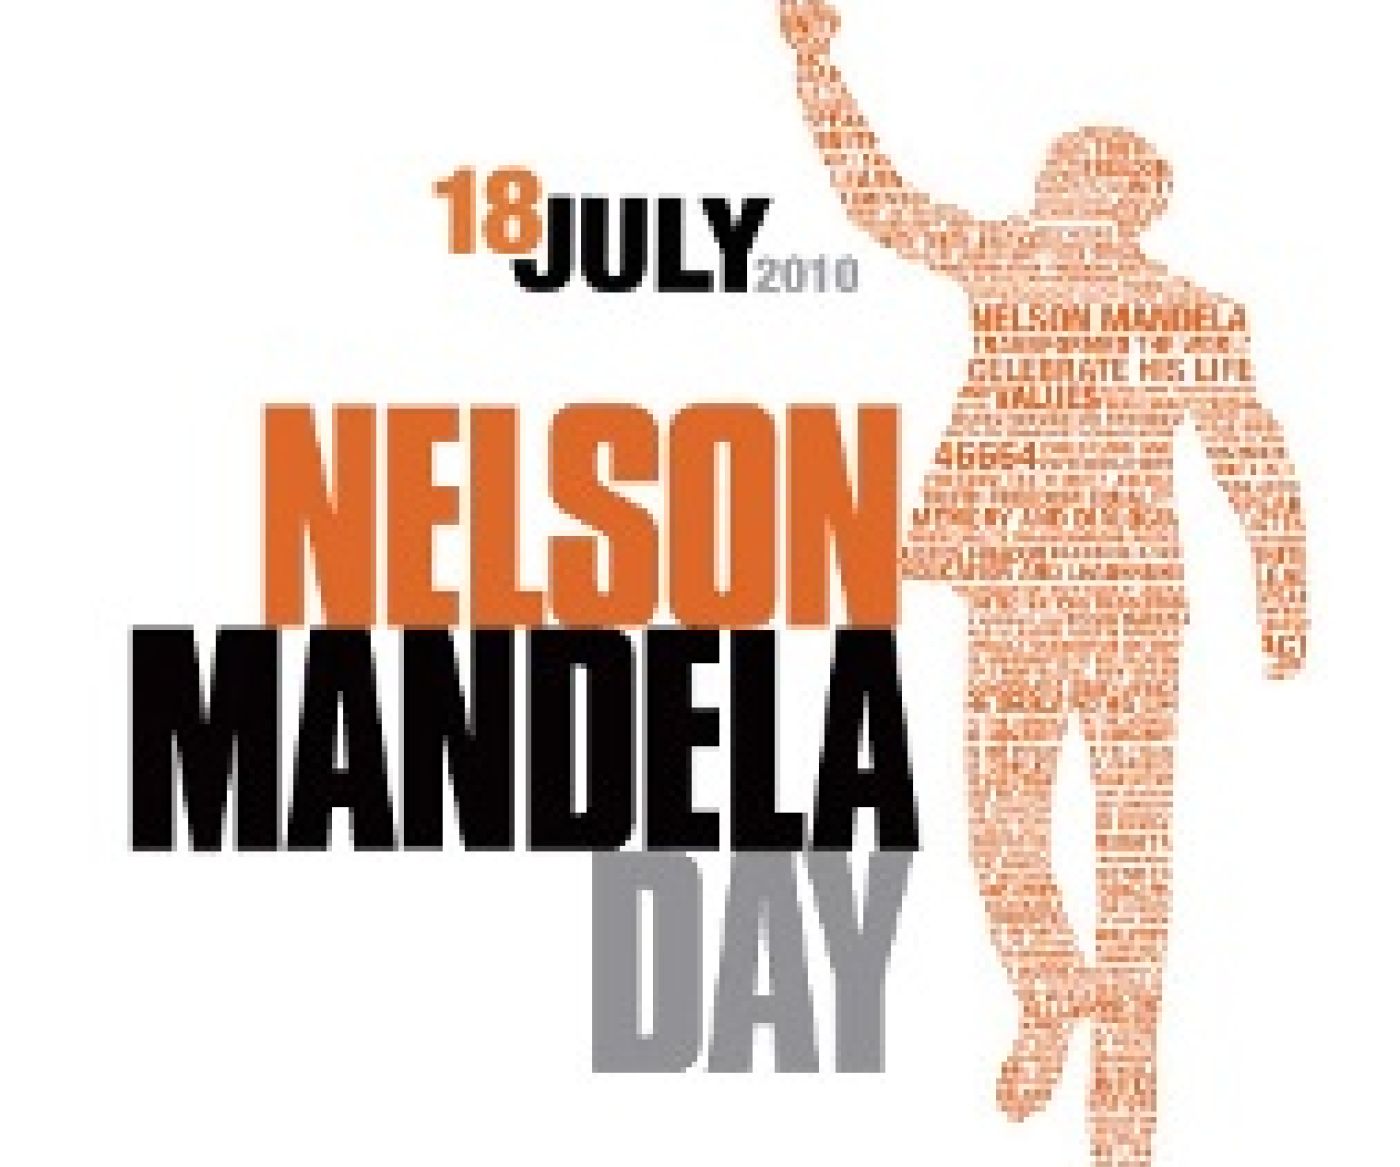 Mandela  Day